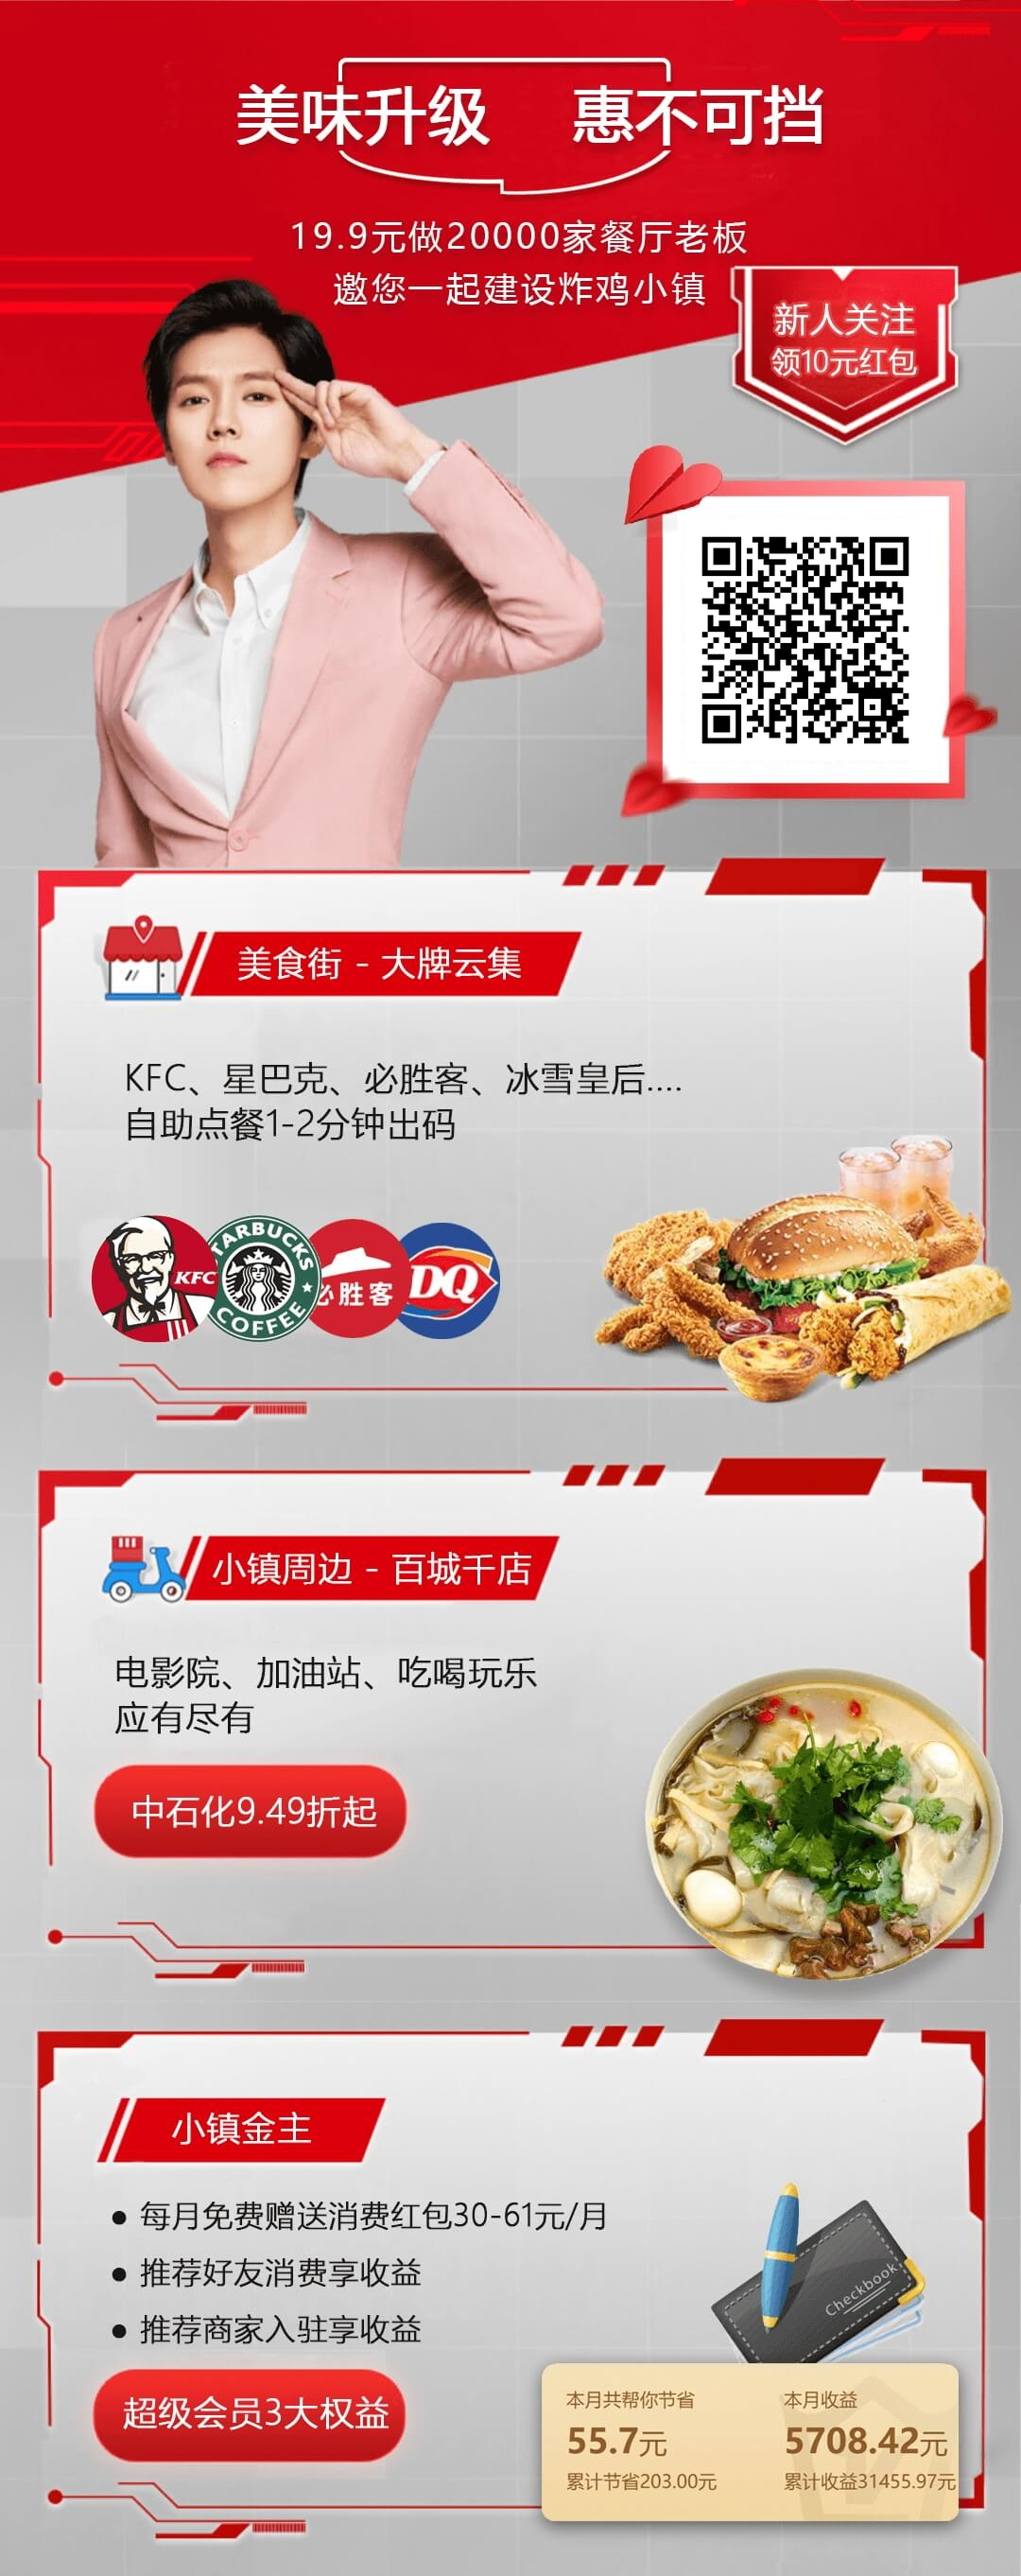 最便宜的肯德基 KFC 优惠券